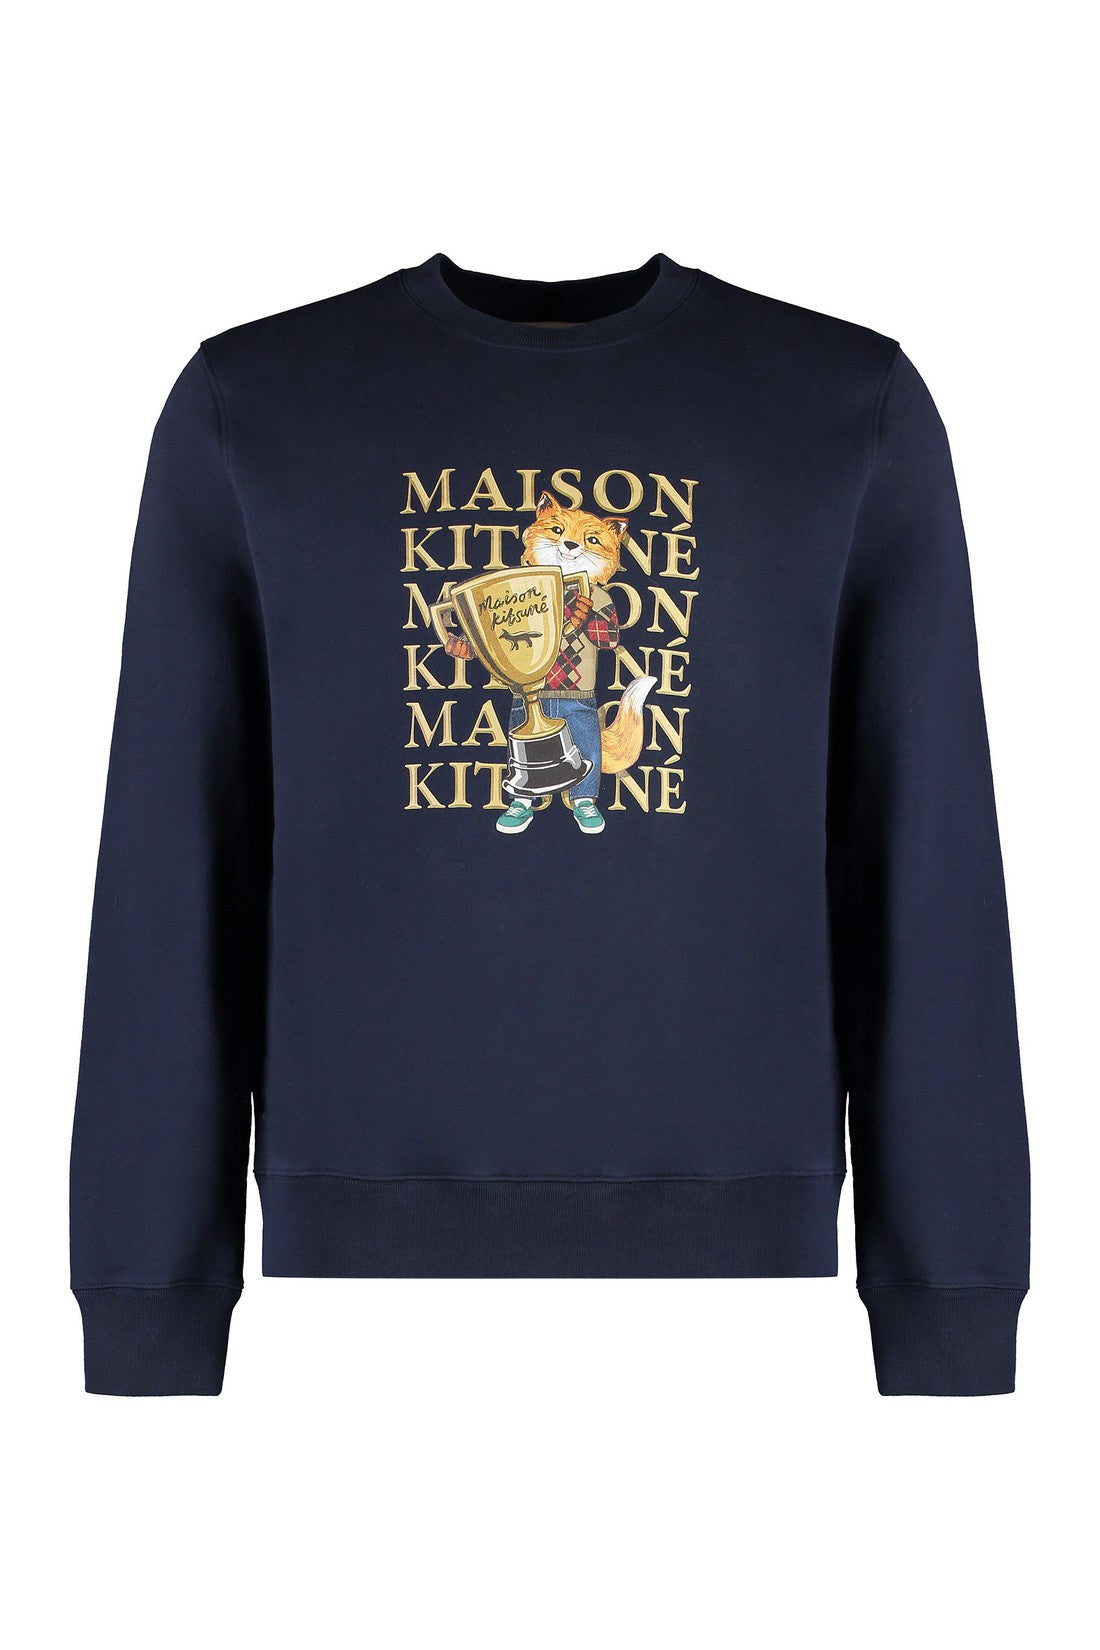 Maison Kitsuné-OUTLET-SALE-Printed cotton sweatshirt-ARCHIVIST